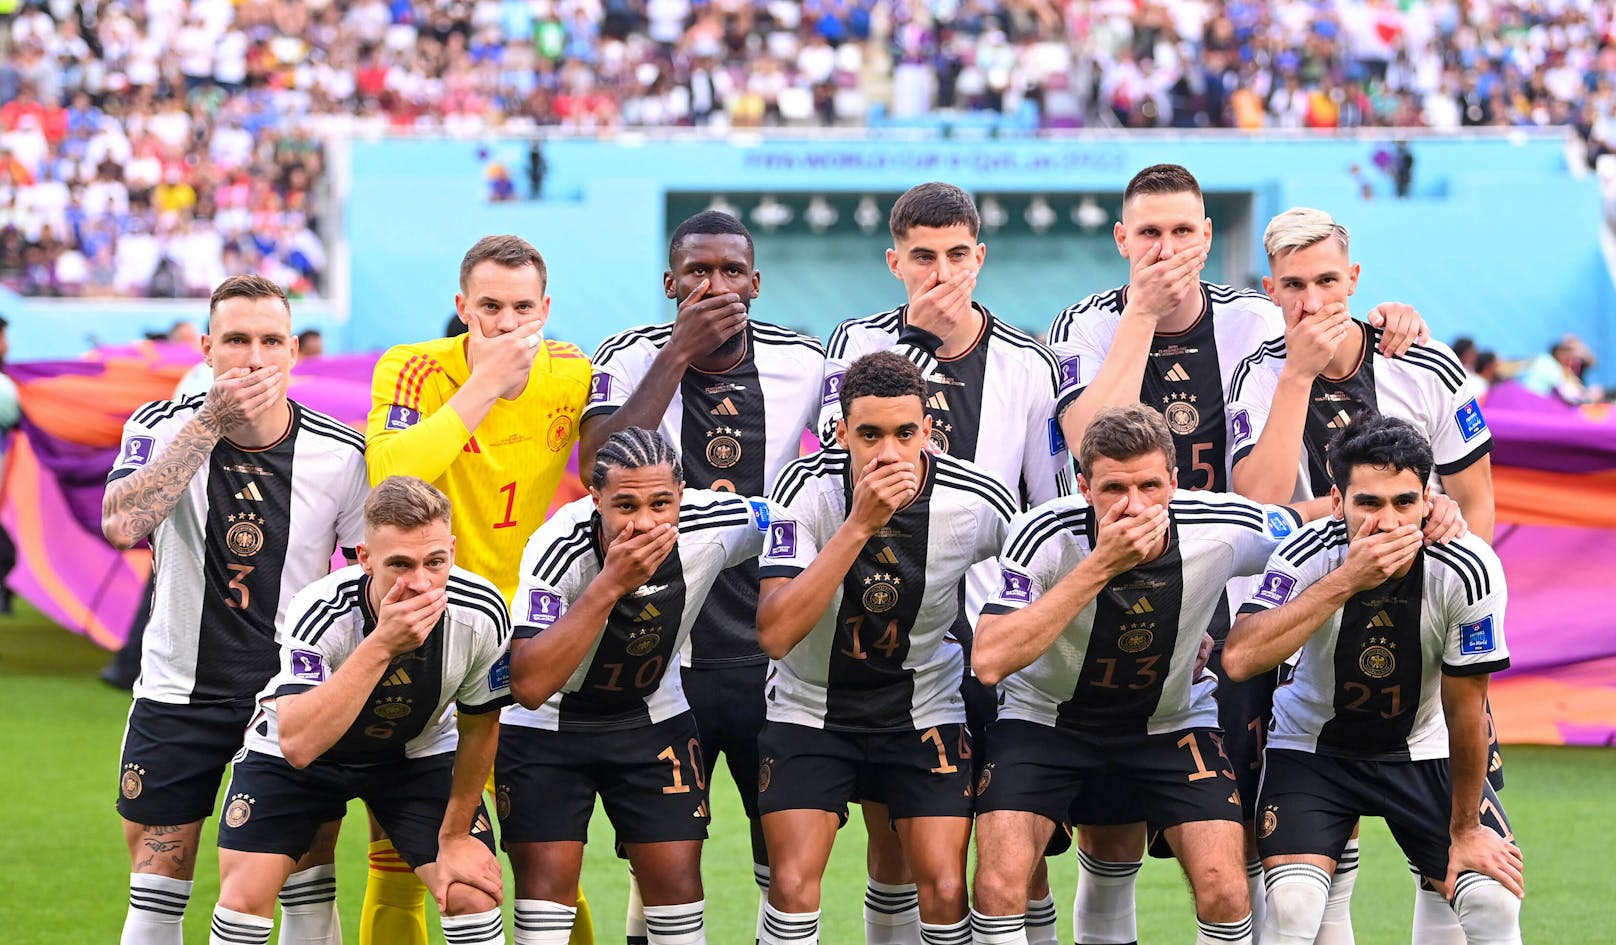 Die "Mund zu"-Geste des deutschen Nationalteams